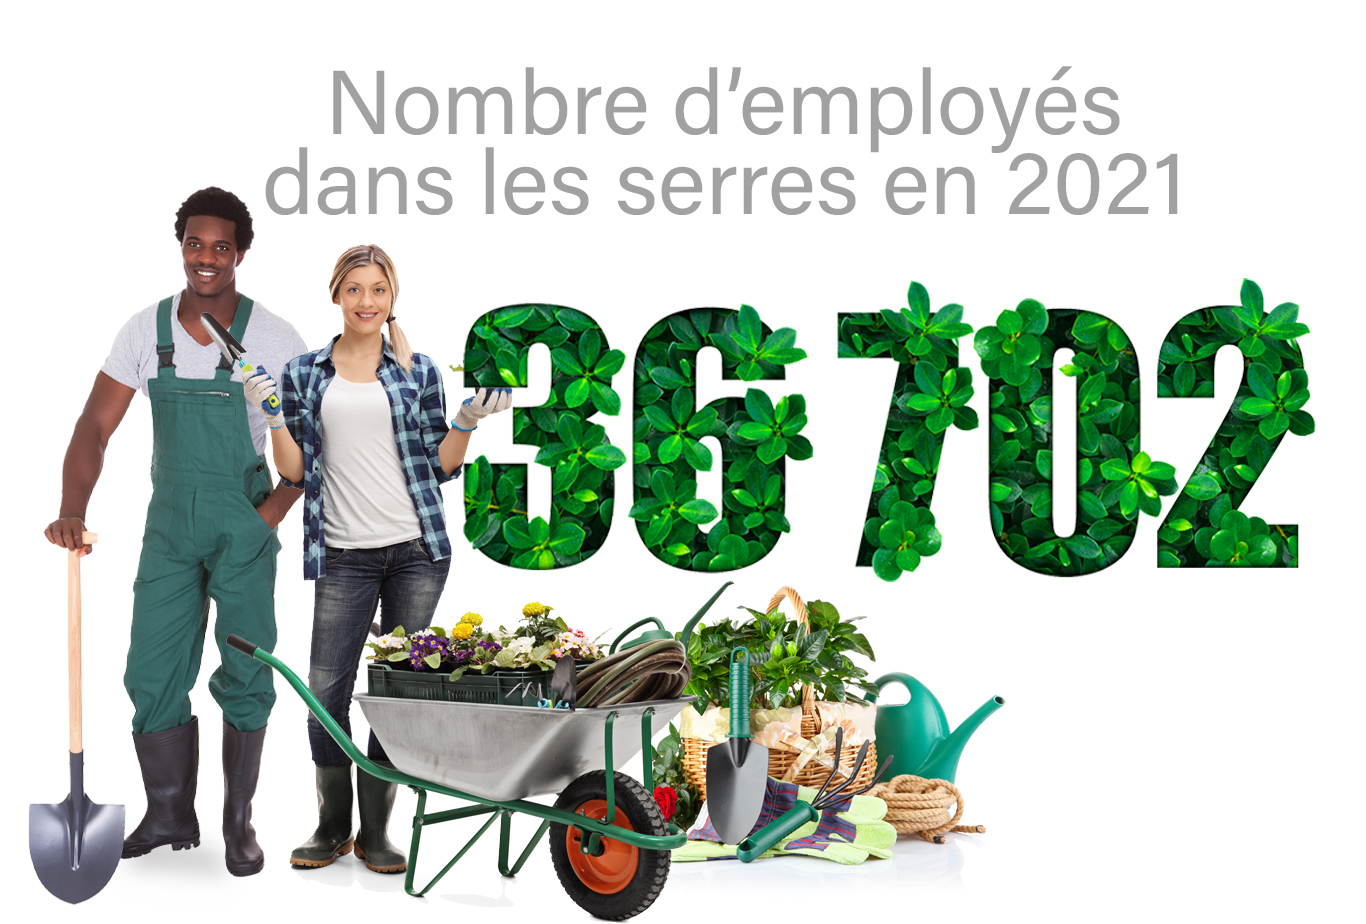 Deux employés de serre avec des outils et des plantes avec le texte "Nombre d'employés de serre en 2021 36 702".